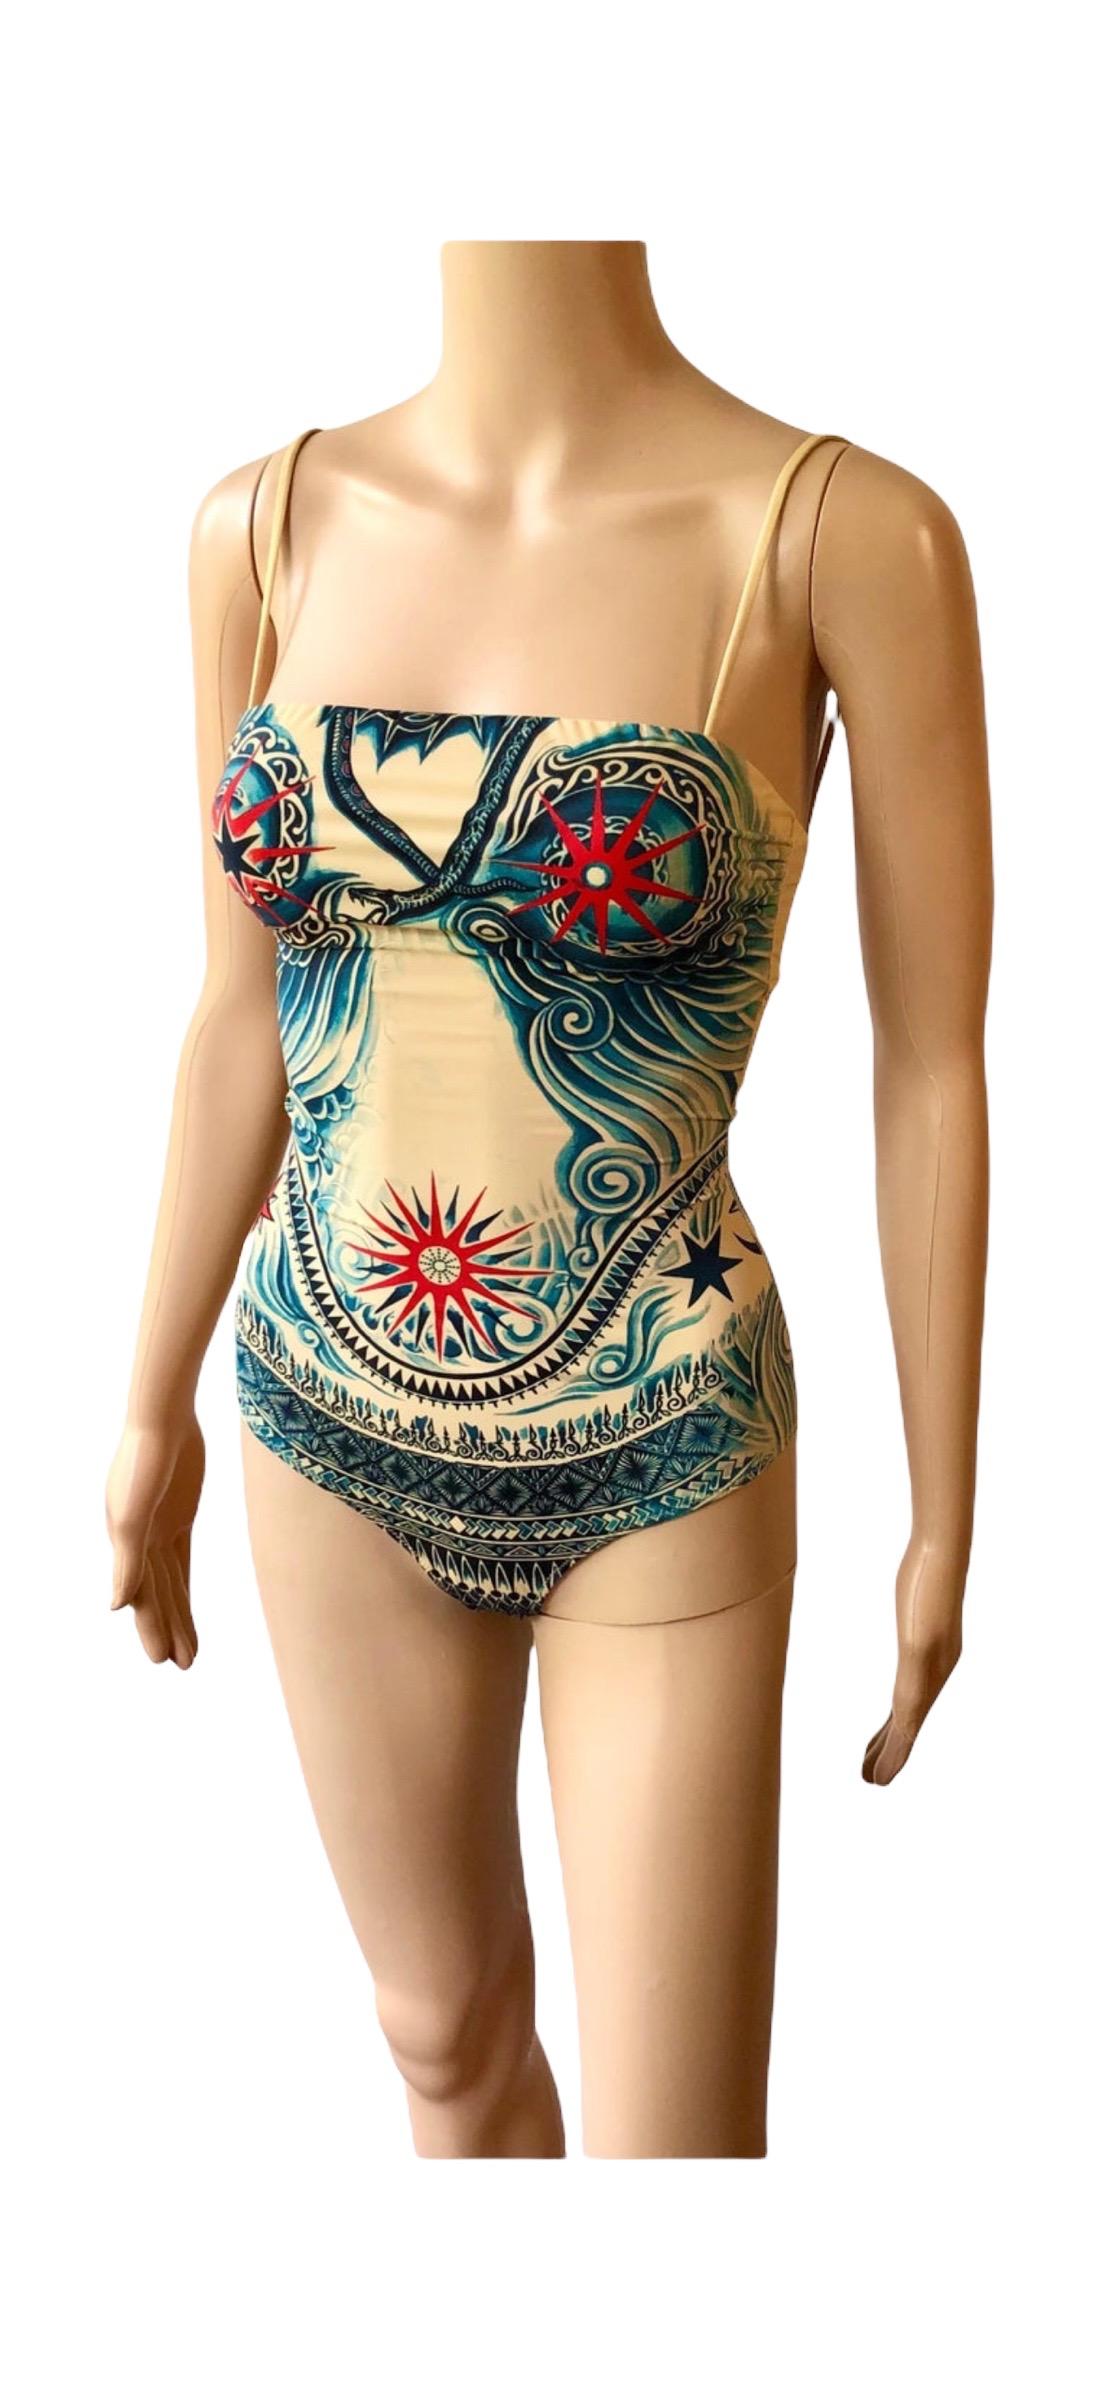 Jean Paul Gaultier Soleil Tattoo Print Bodysuit Swimwear Swimsuit 6